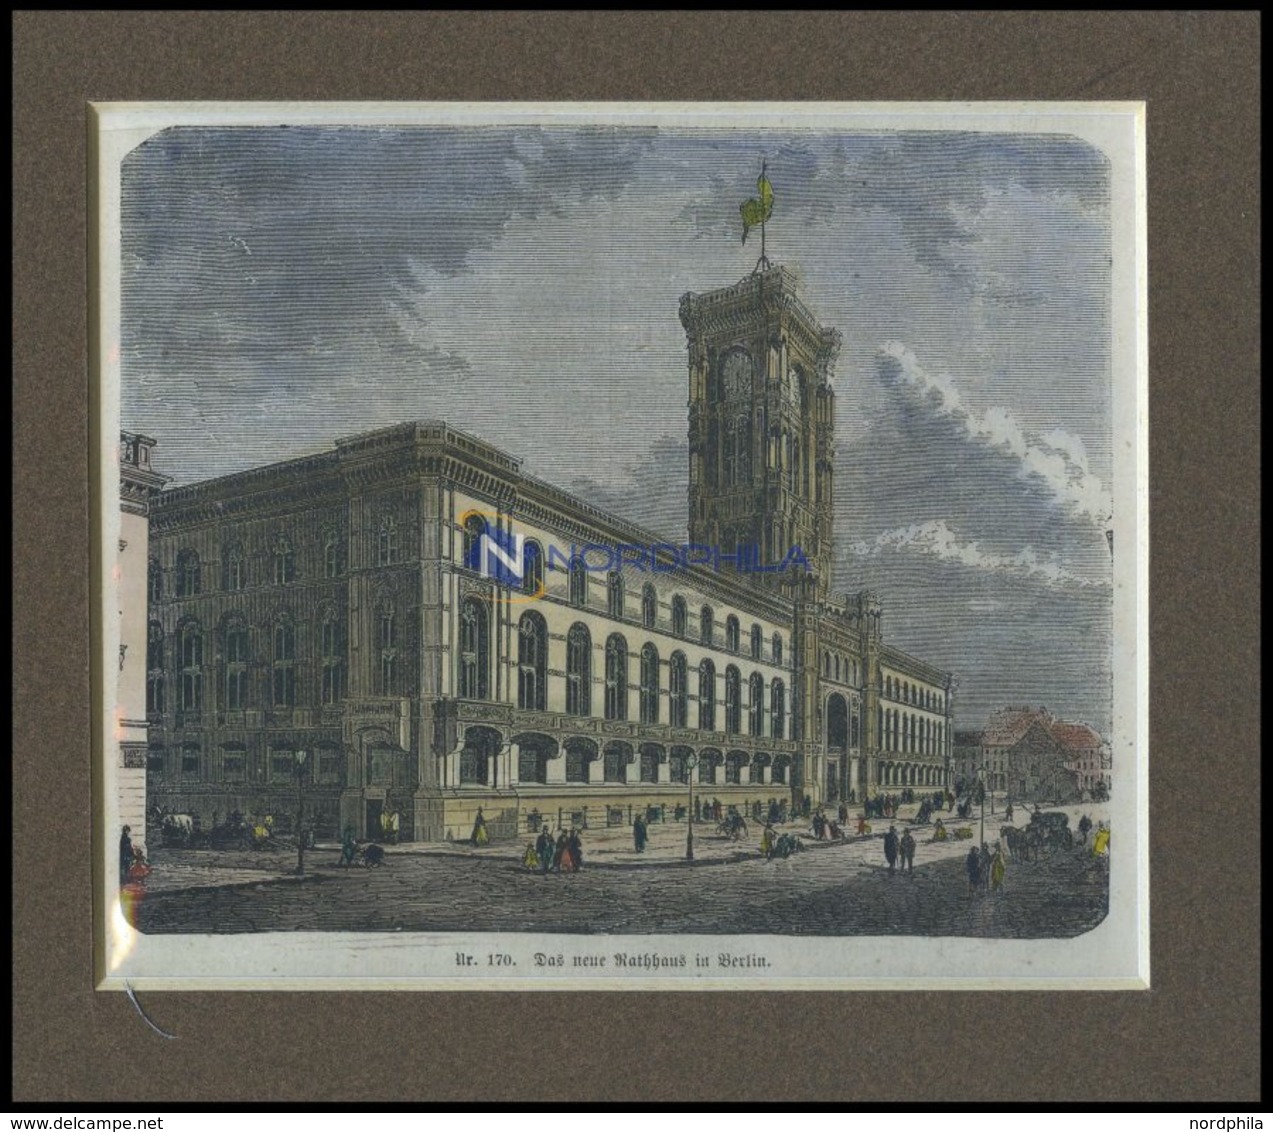 BERLIN: Das Neue Rathaus, Kolorierter Holzstich Um 1880 - Litografía